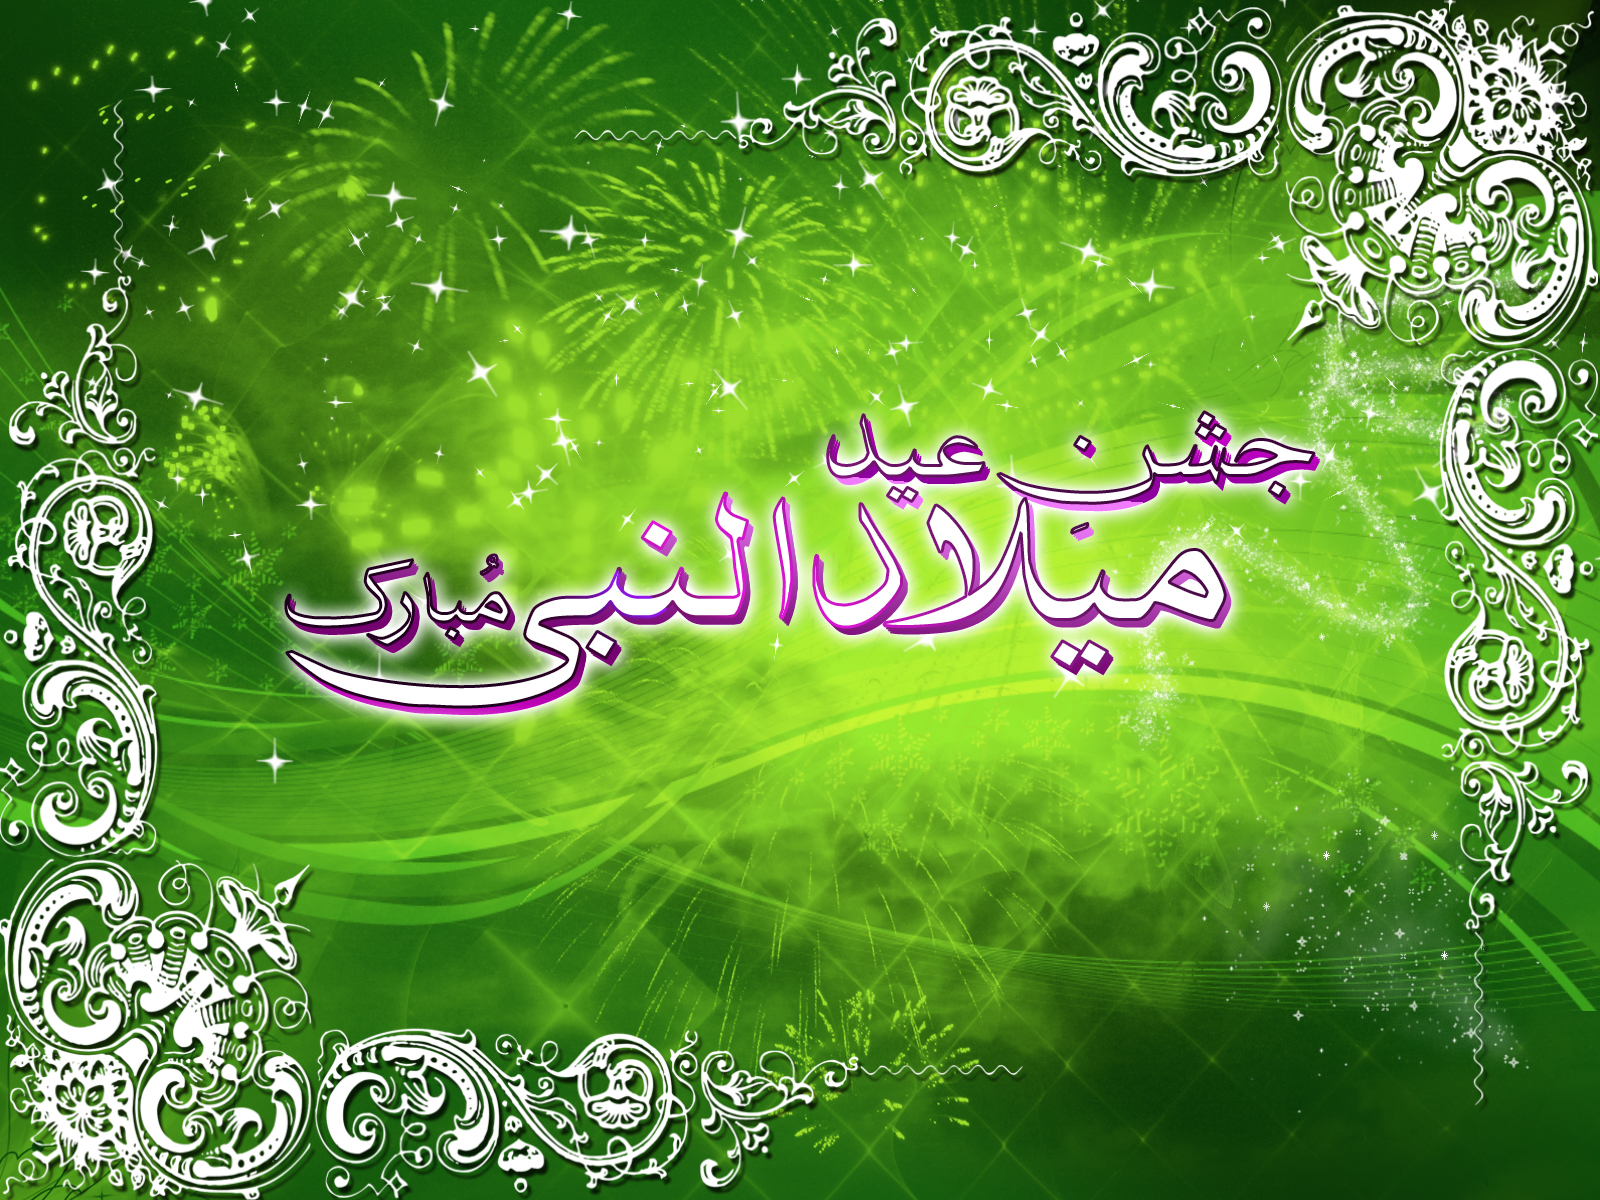 Happy Eid Milad Un Nabi One HD Wallpaper Pictures